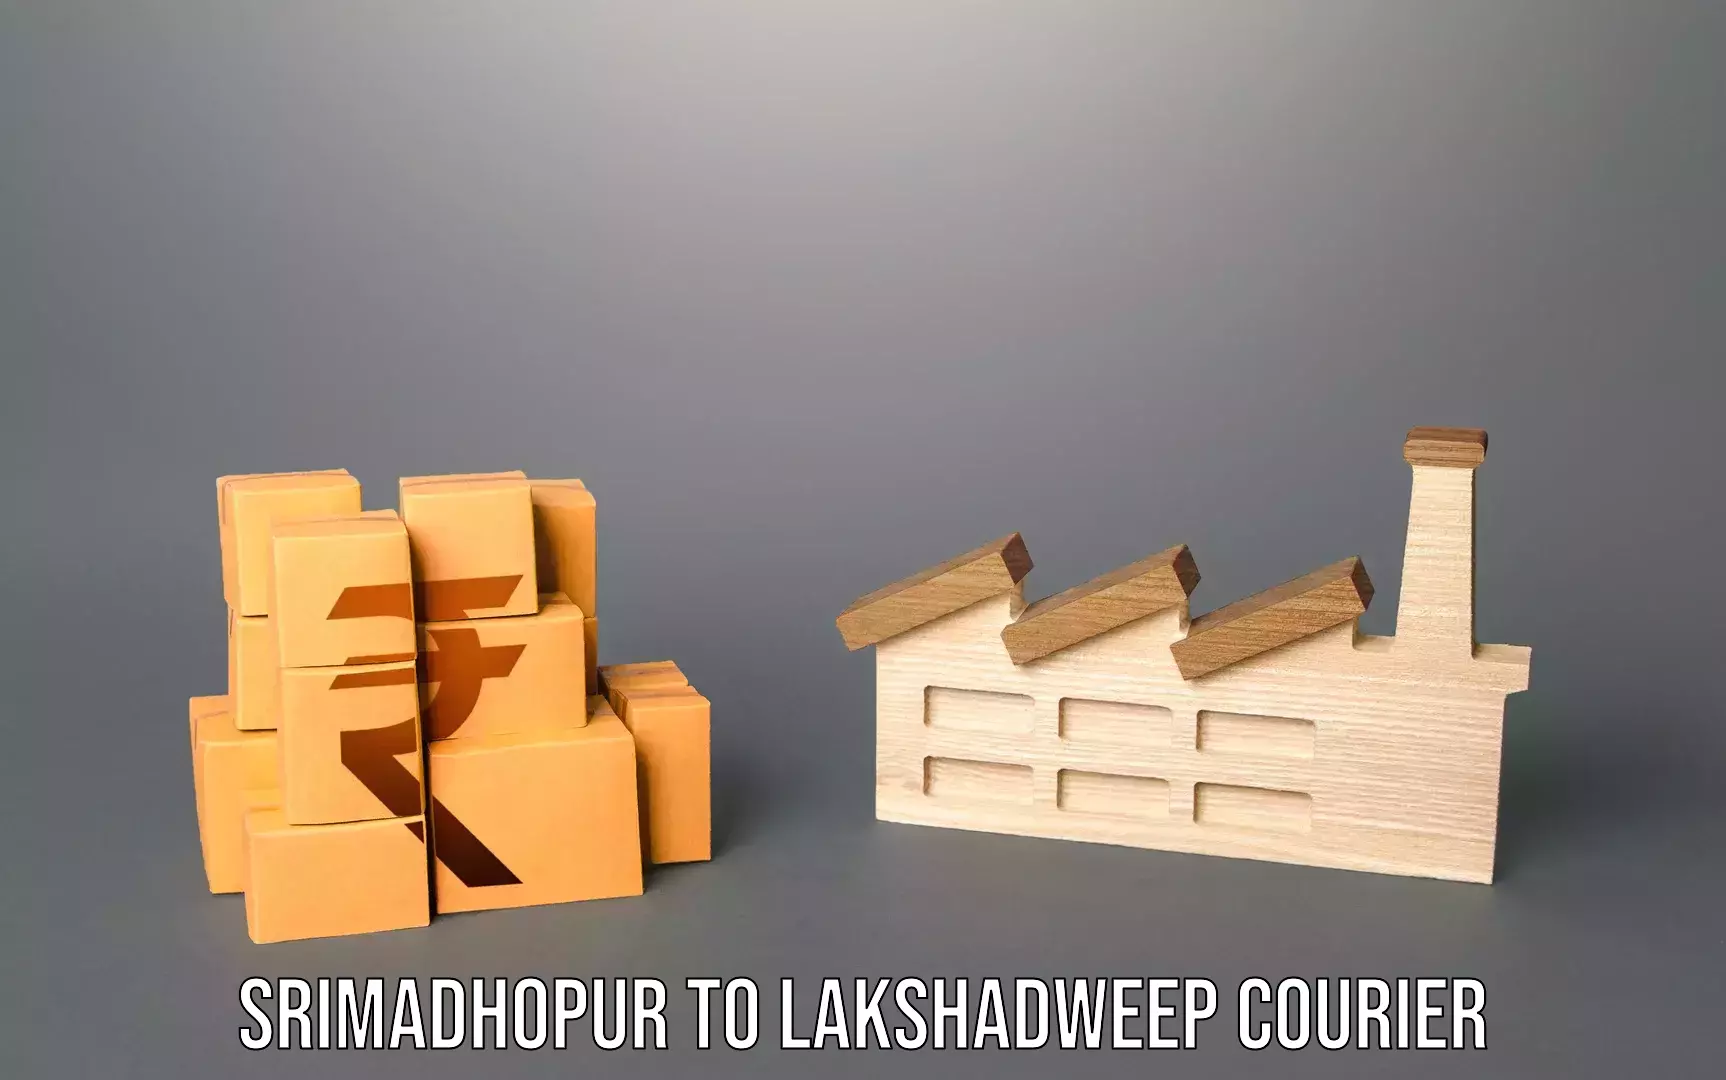 Luggage transport company Srimadhopur to Lakshadweep